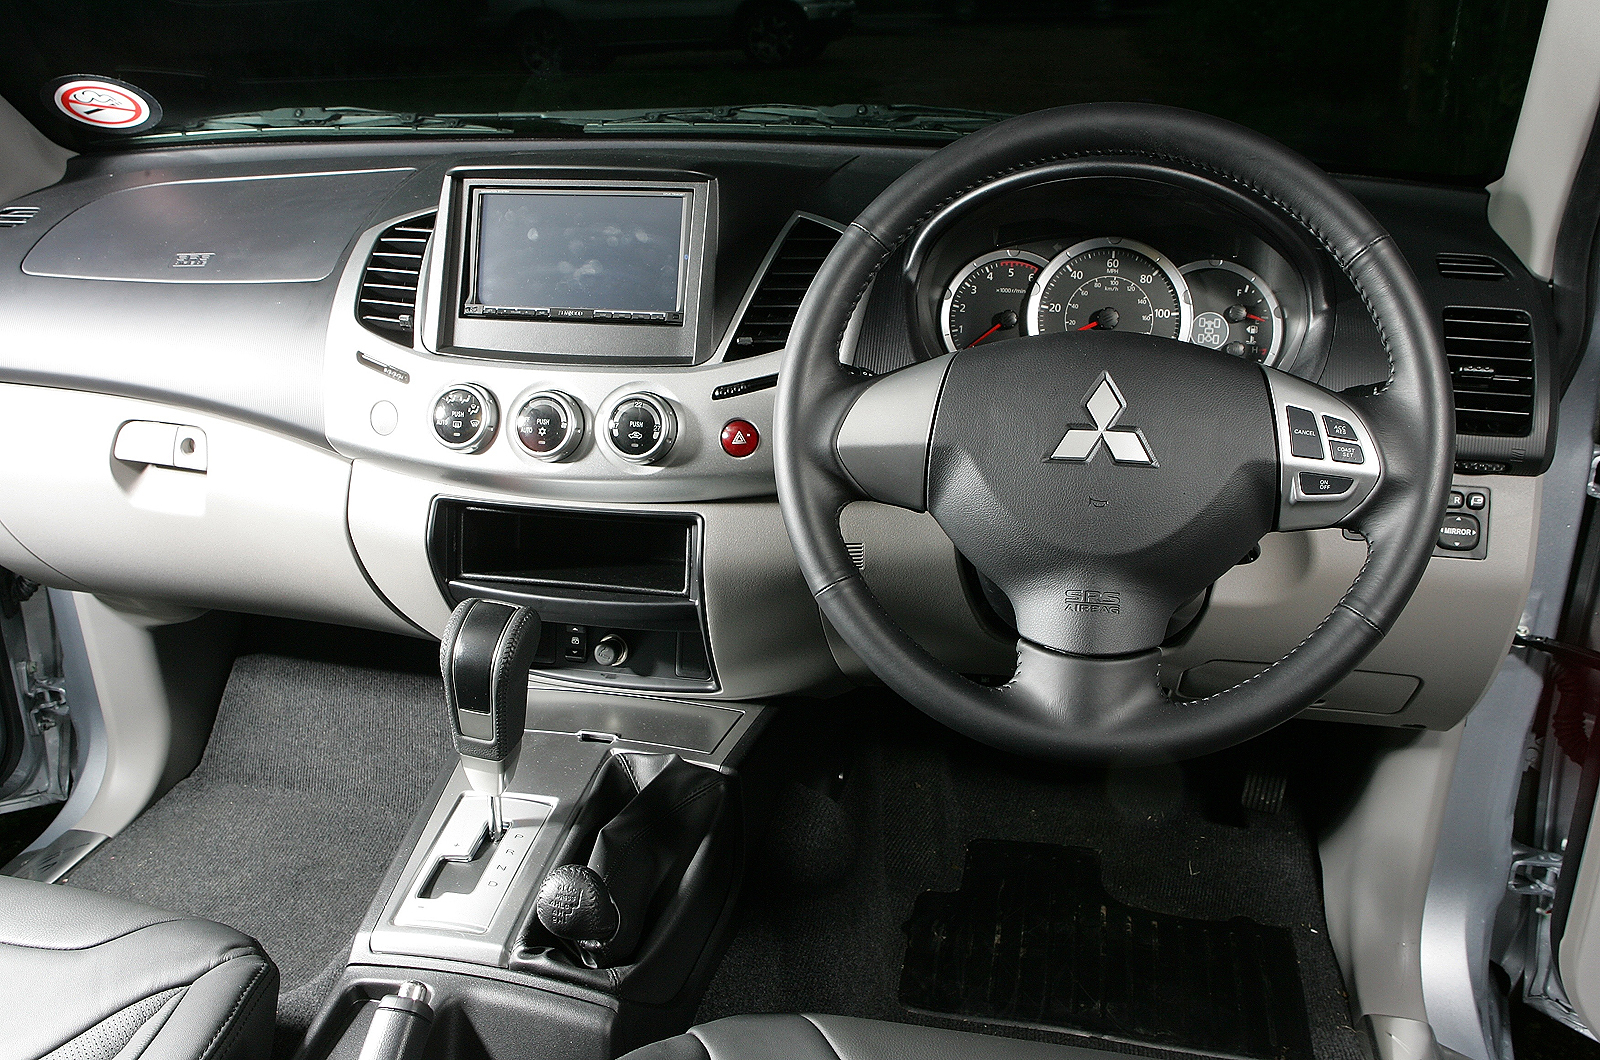 Mitsubishi L200 pickup review (1988-2006)